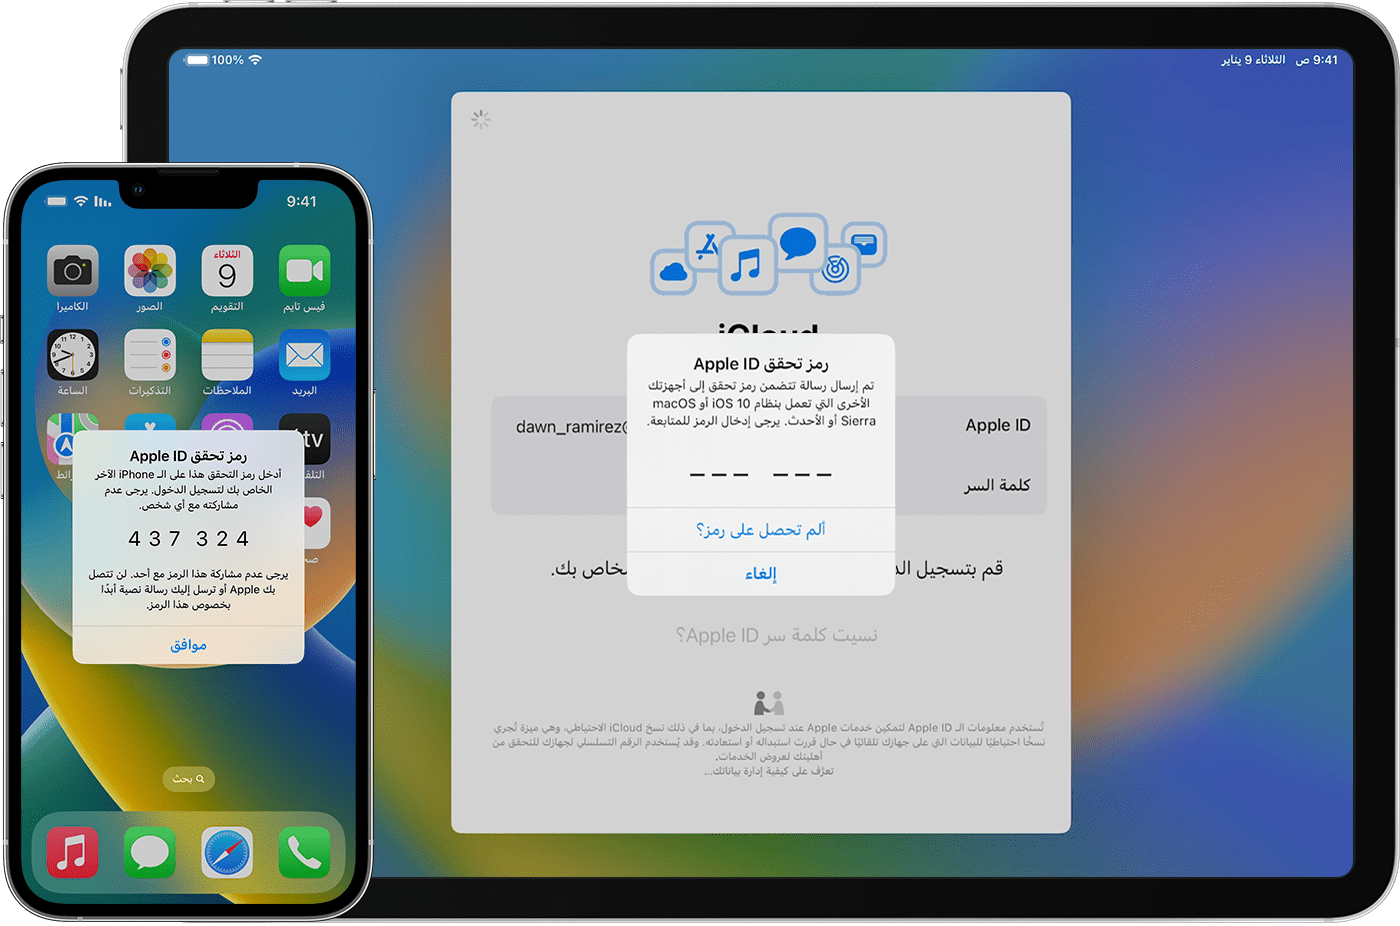 المصادقة ذات العاملين لـ Apple ID - Apple الدعم (الإمارات)